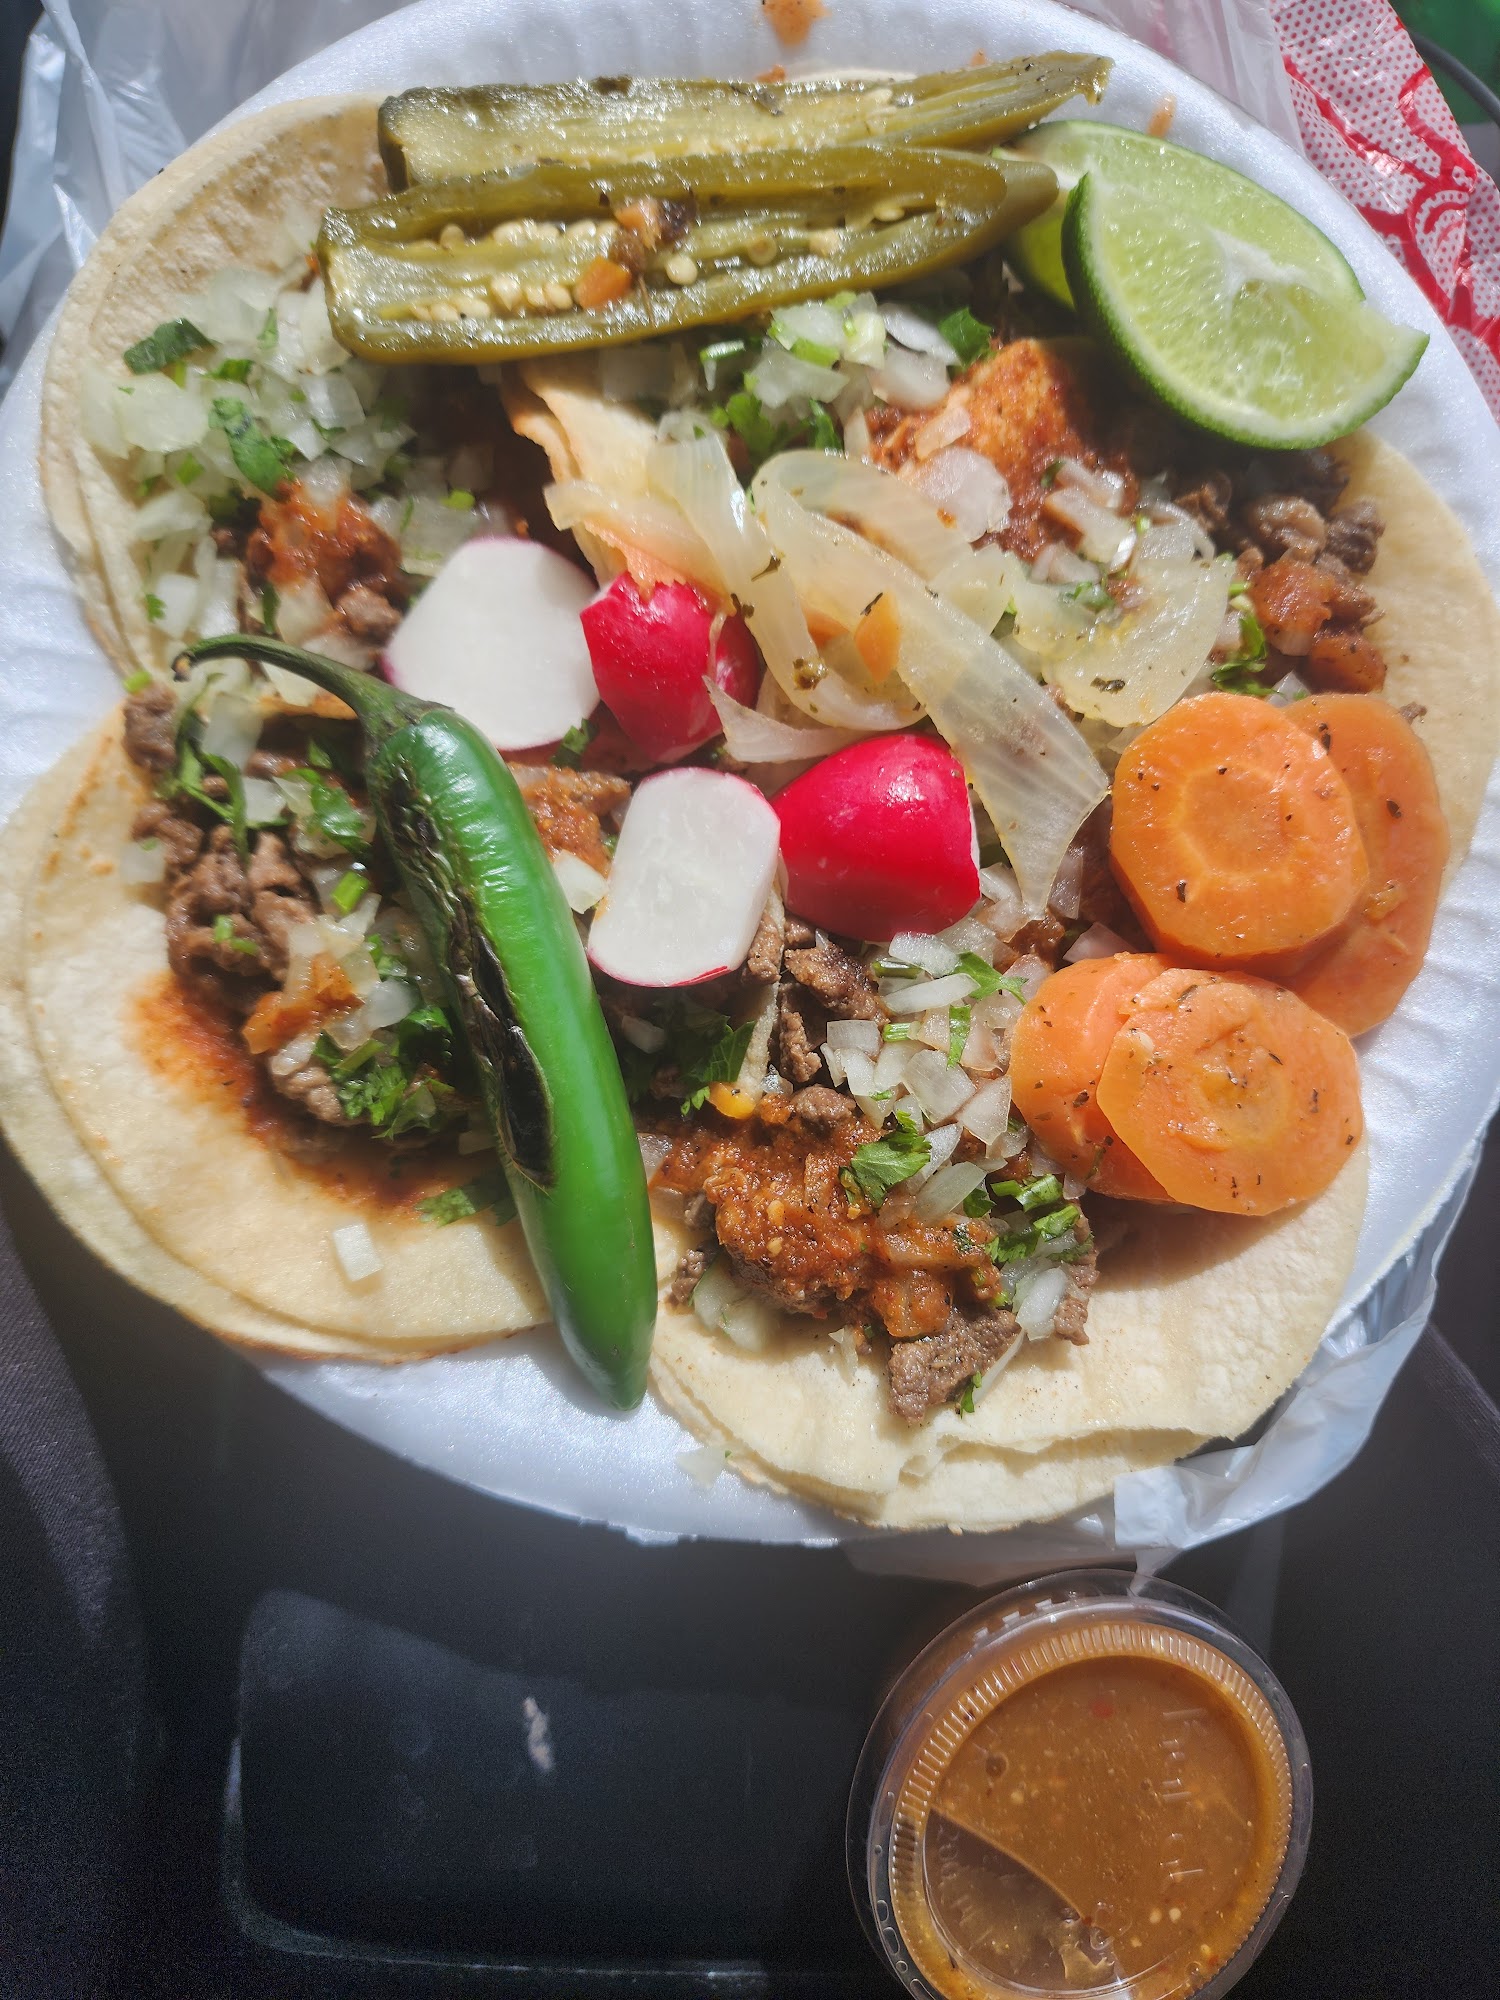 Tacos Michoacan (Truck)